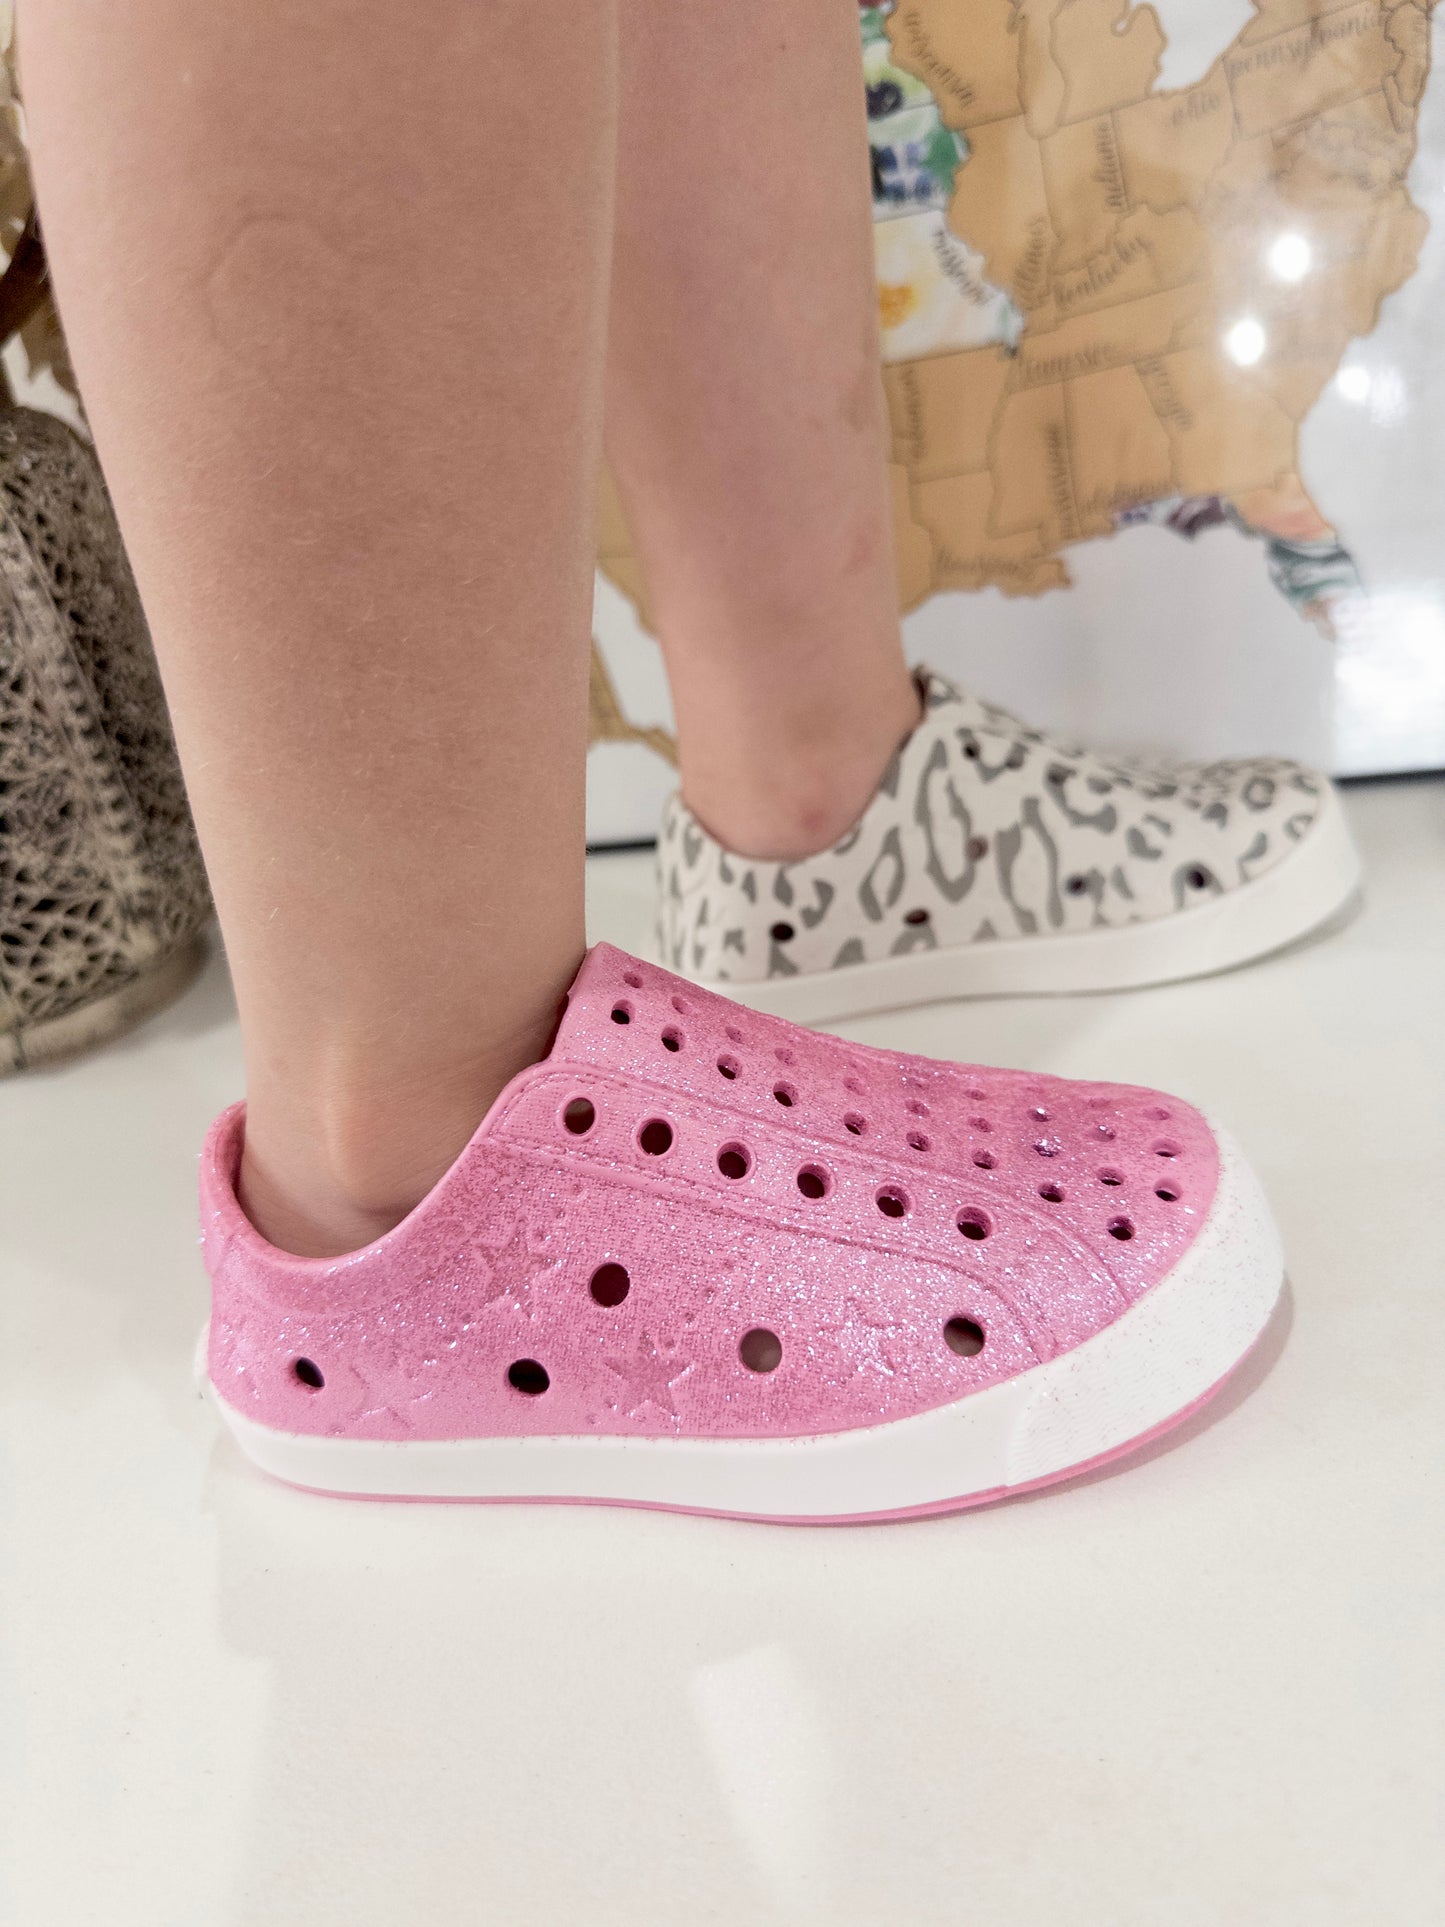 Toddler Waterproof Slip-On Sneakers